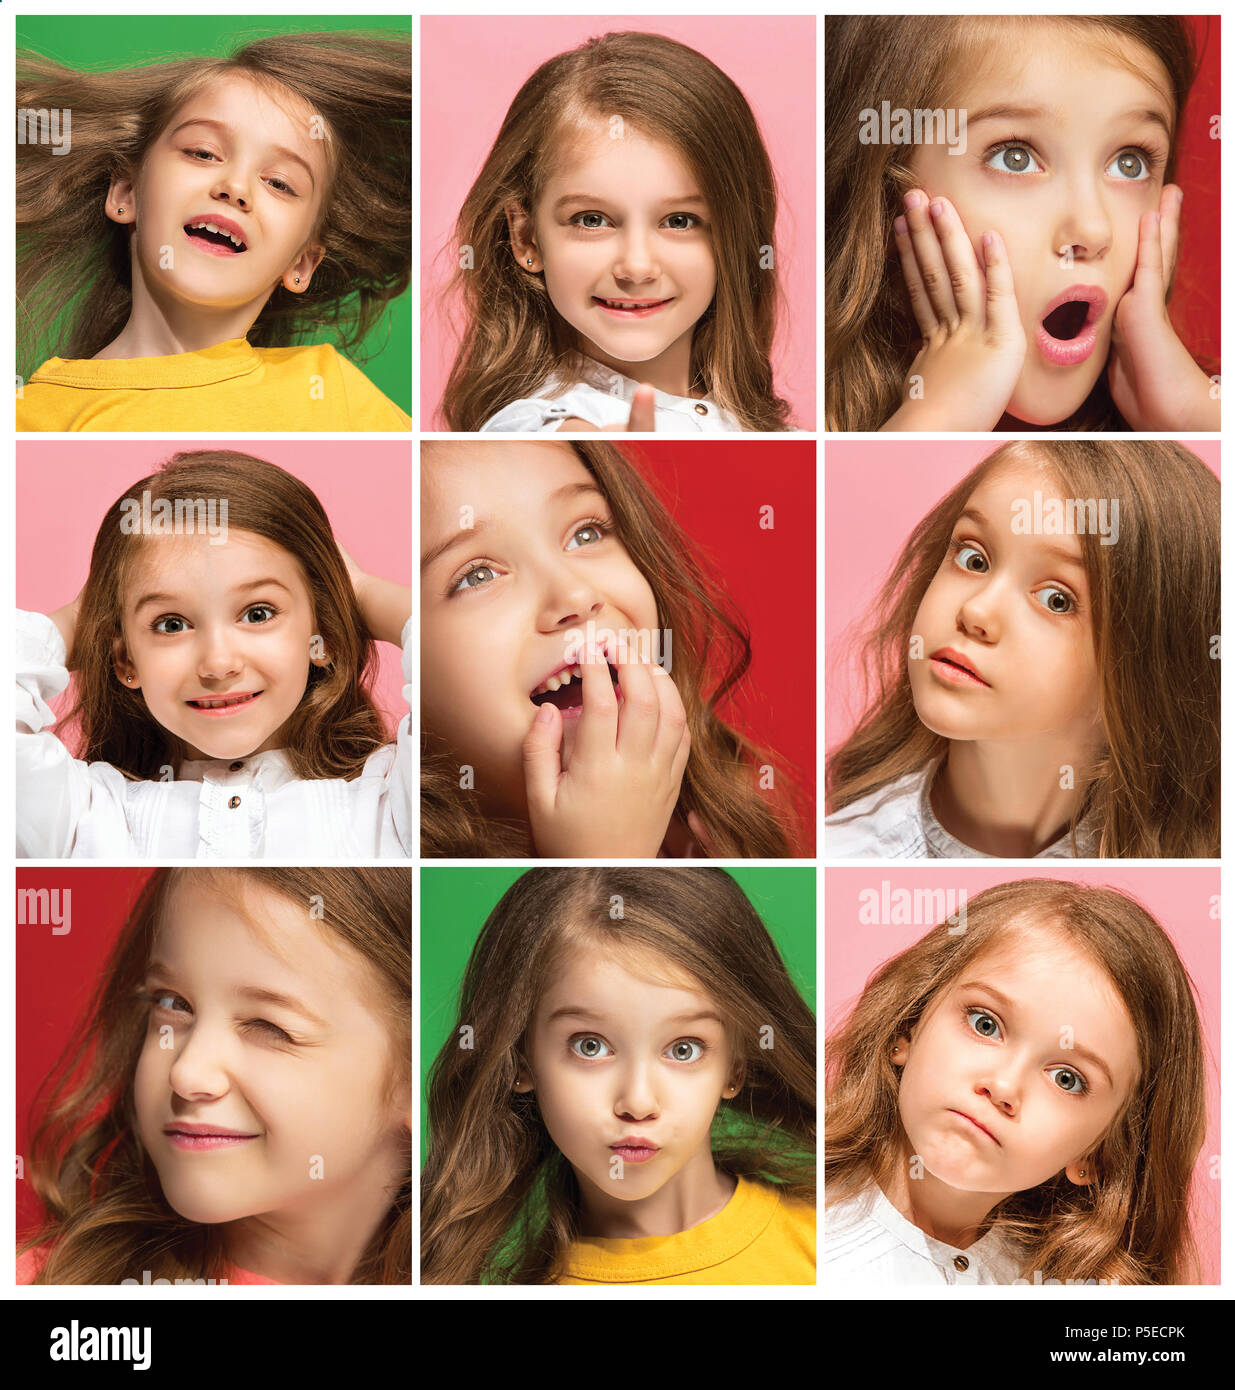 Le collage des différentes expressions du visage humain, les émotions et sentiments de jeune fille de l'adolescence. Banque D'Images